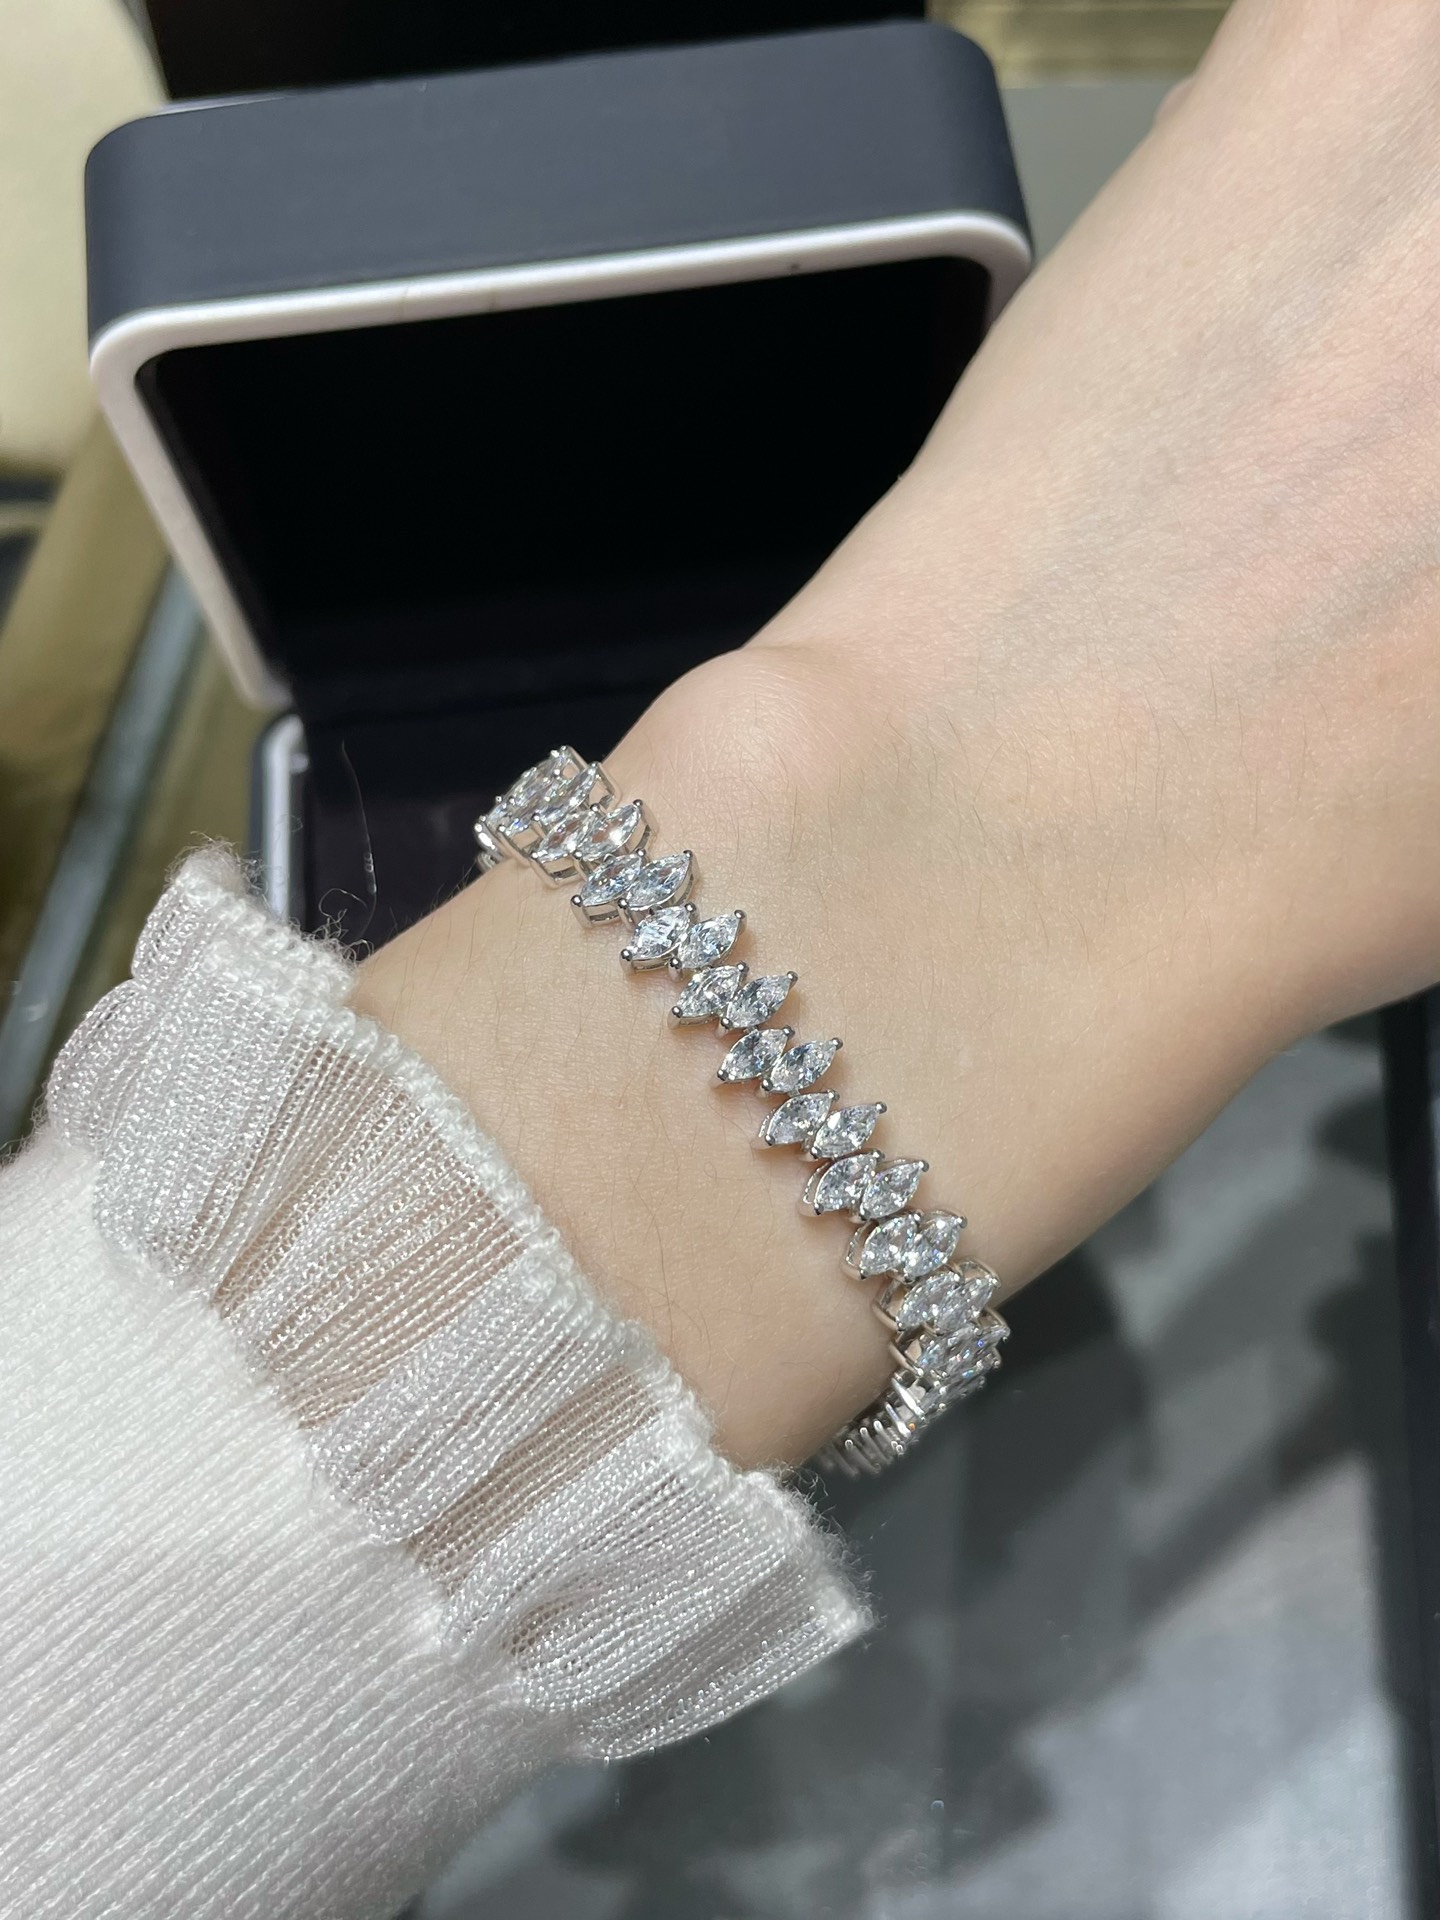 Jewelry Bracelet Set With Diamonds